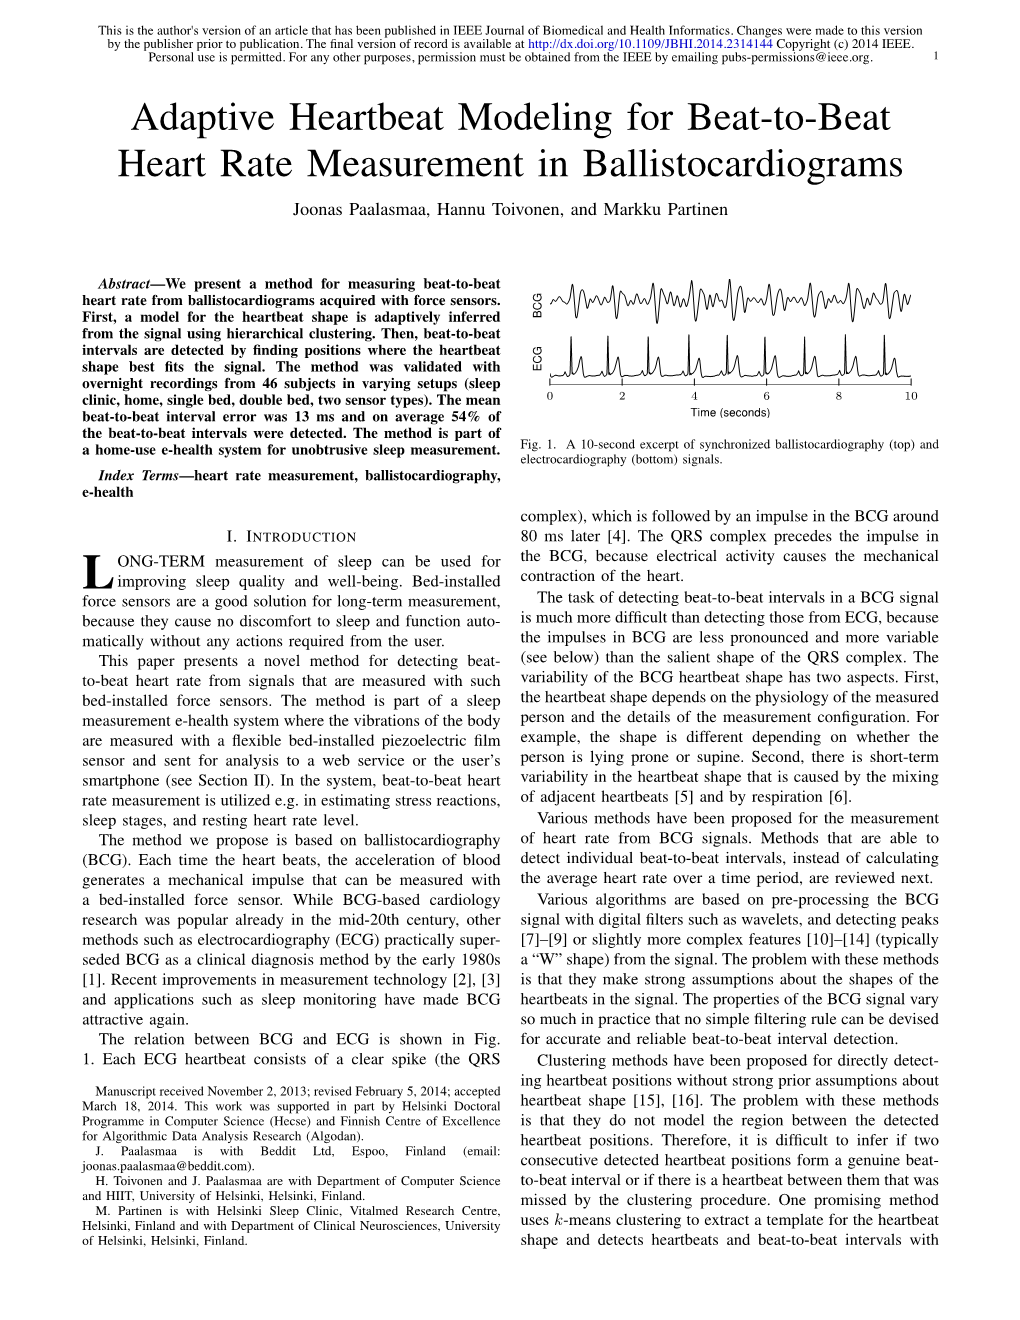 Adaptive Heartbeat Modeling for Beat-To-Beat Heart Rate Measurement in Ballistocardiograms Joonas Paalasmaa, Hannu Toivonen, and Markku Partinen